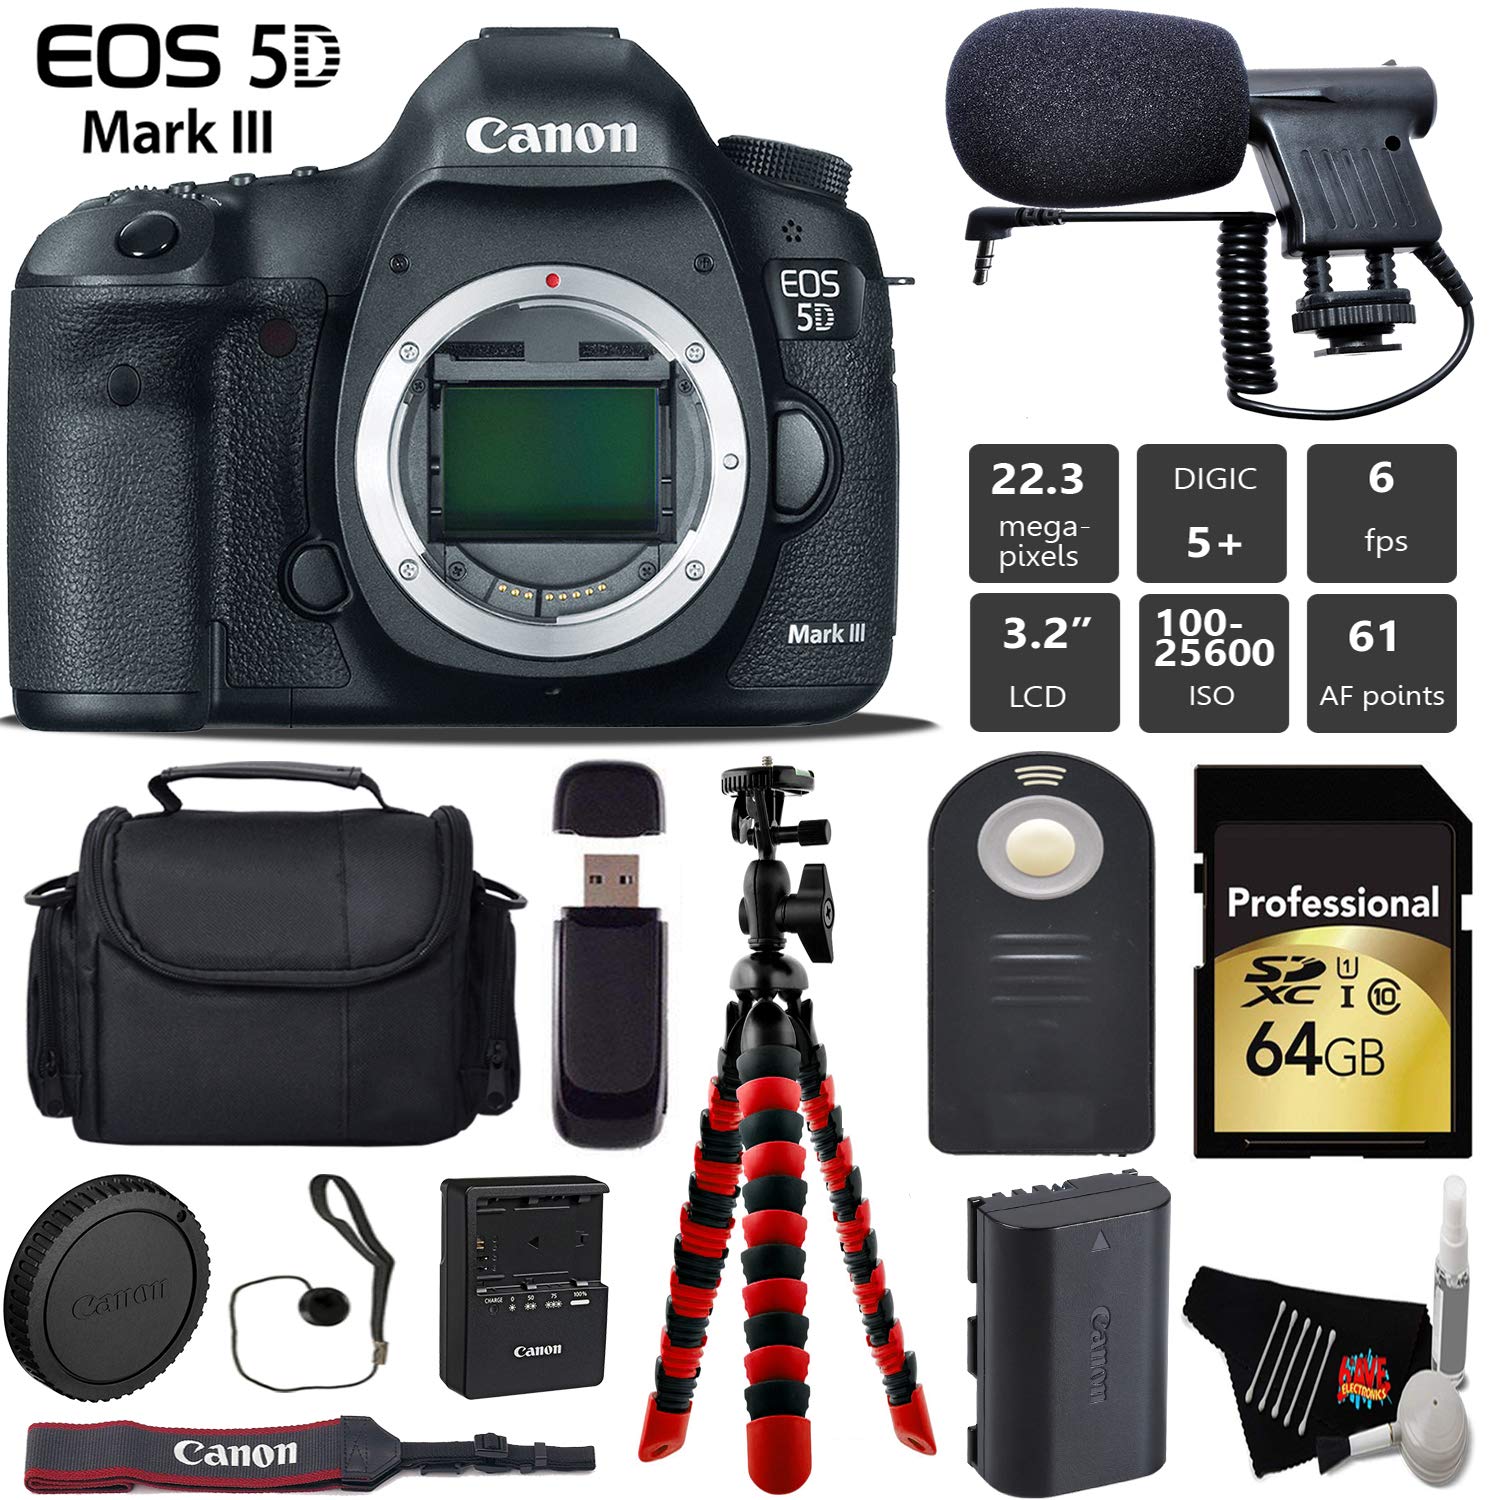 Canon EOS 5D Mark III DSLR Camera (Body Only) + Wireless Remote + Condenser Microphone + Case + Wrist Strap + Tripod Pro Bundle